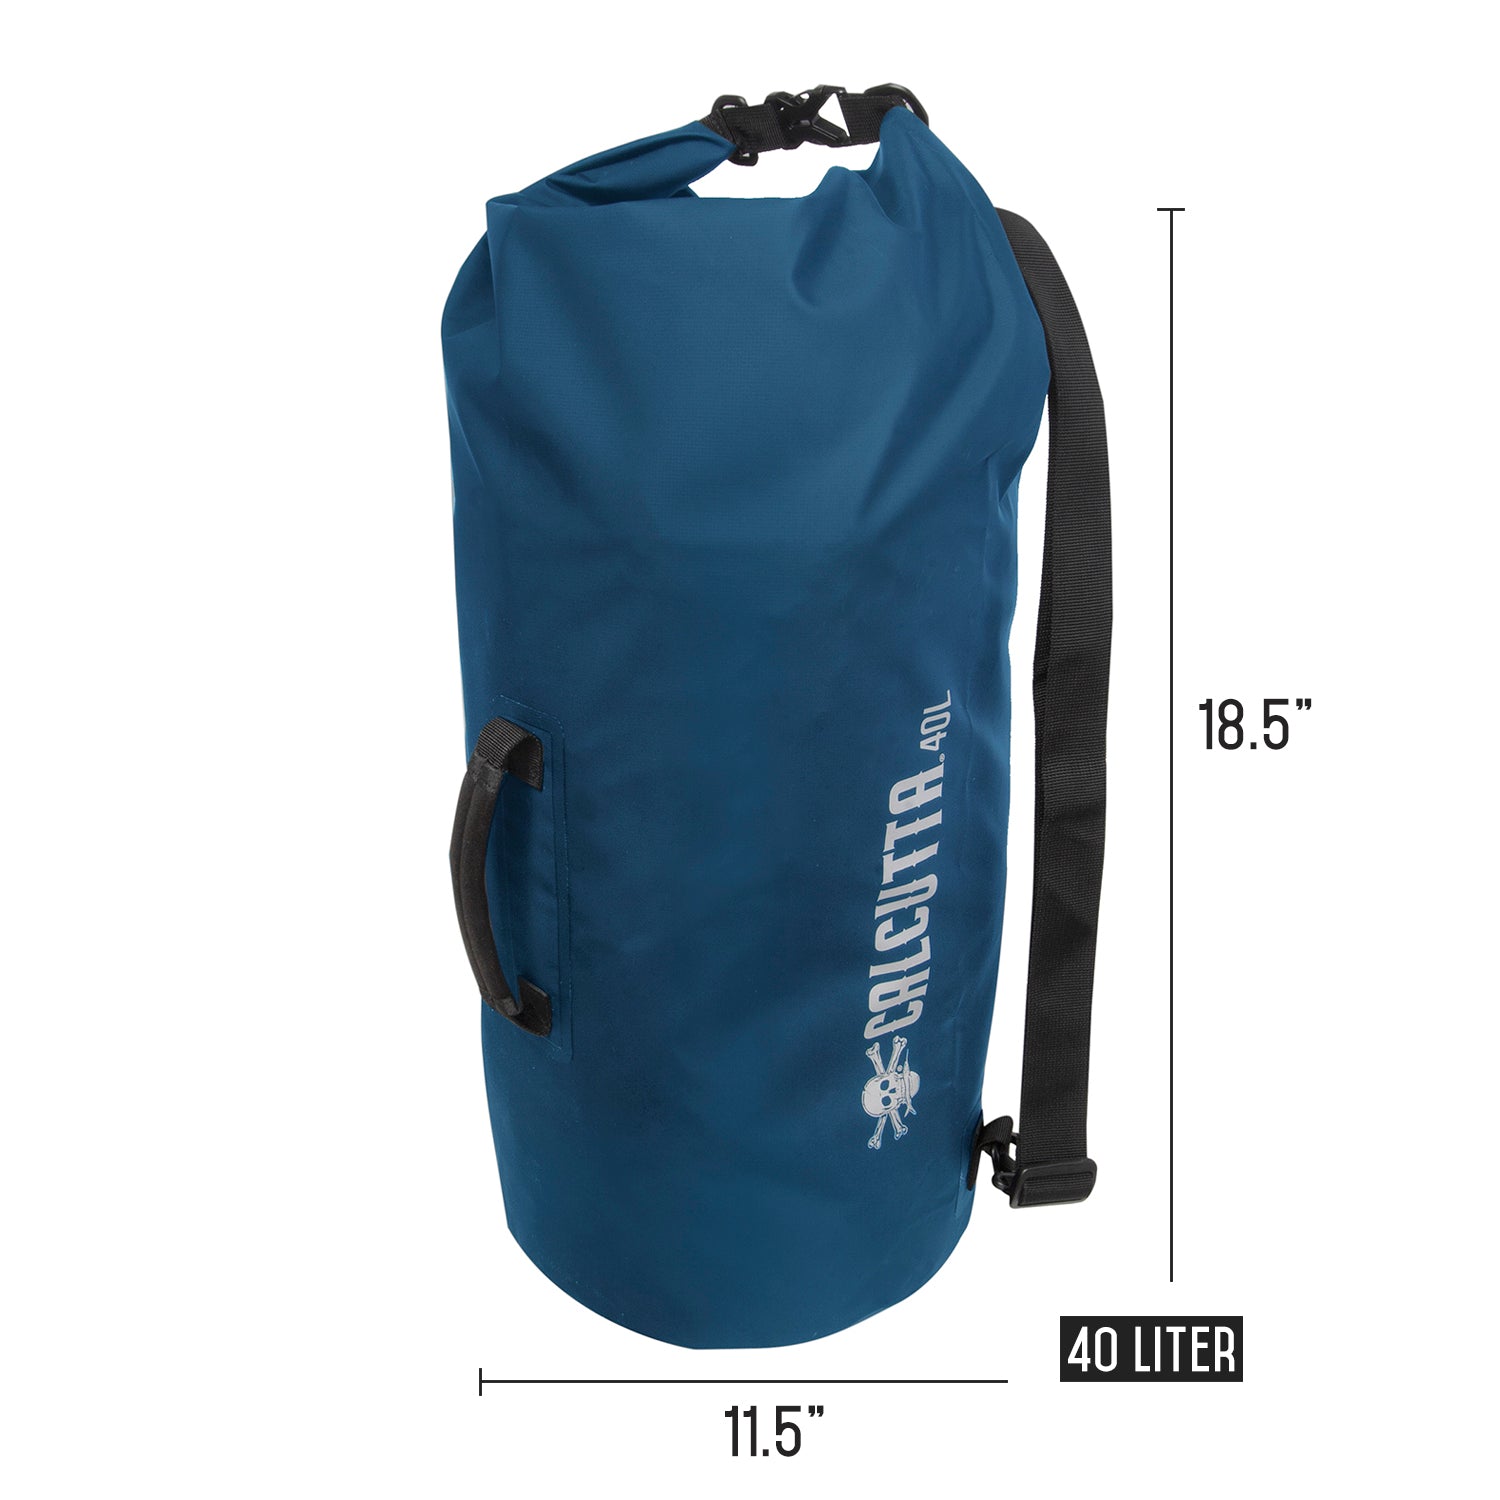 Waterproof Dry Bag - 40 Liter